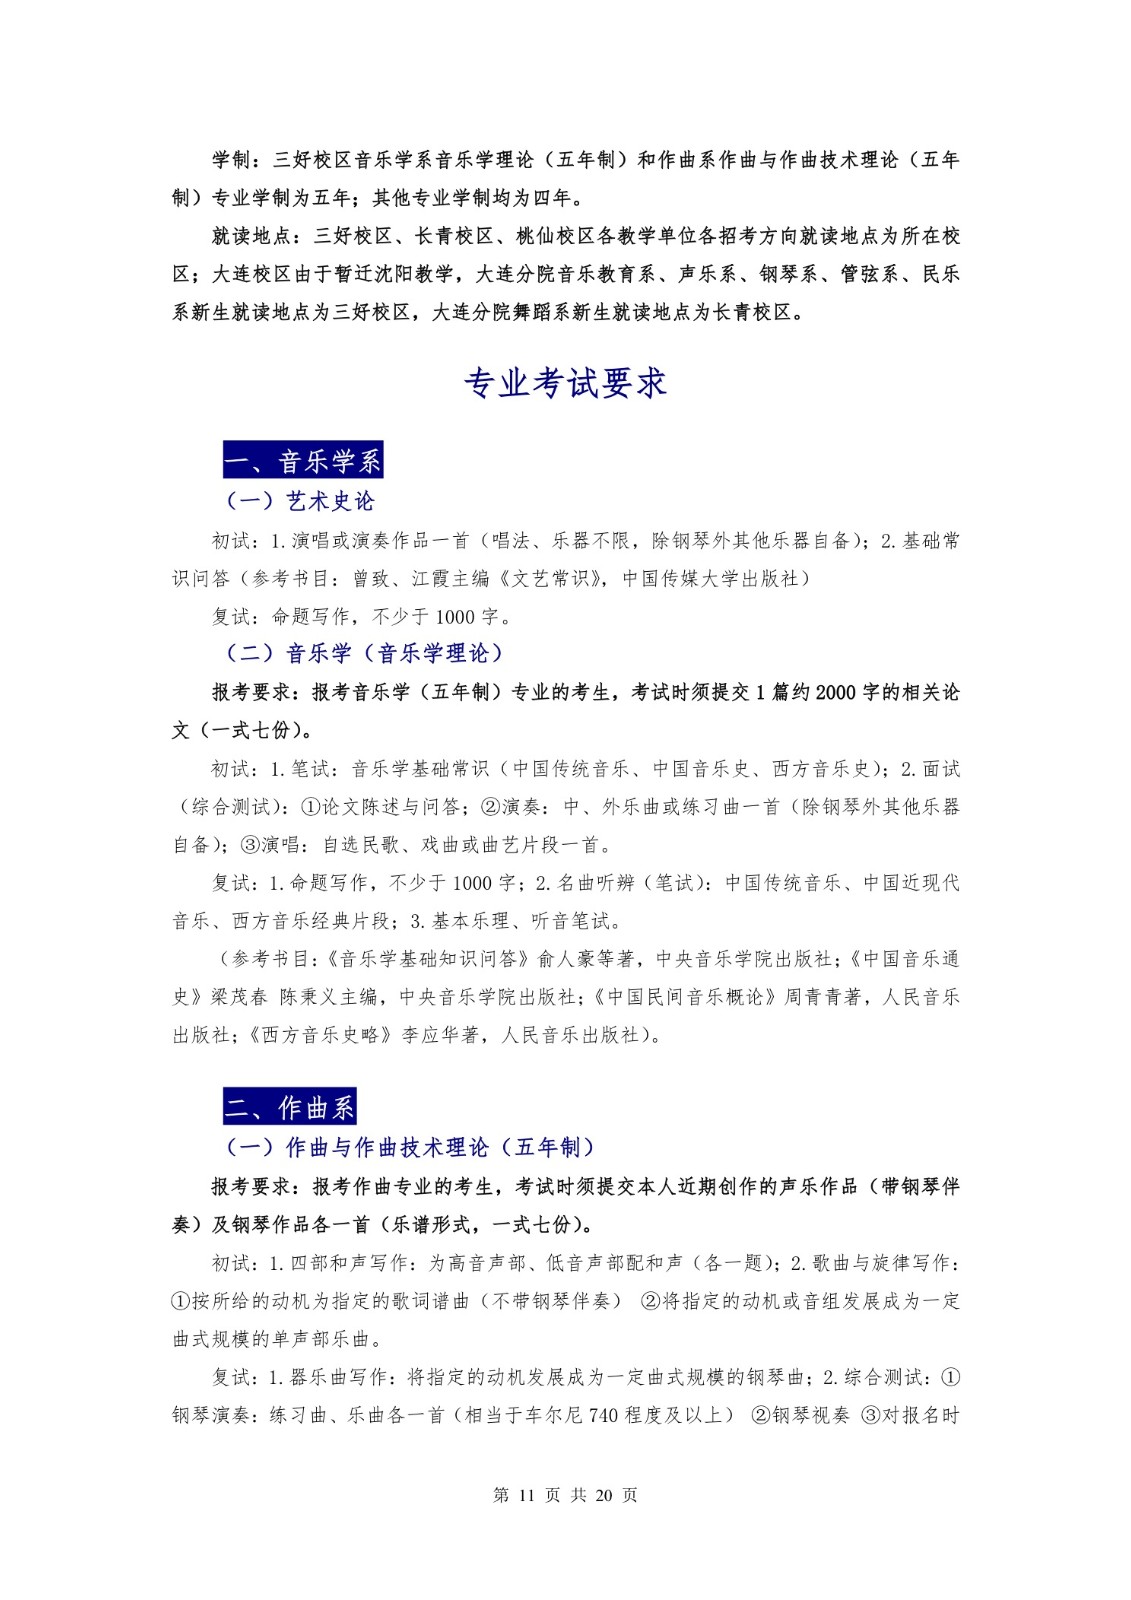 2018年沈阳音乐学院本科招生简章 -page11.jpeg